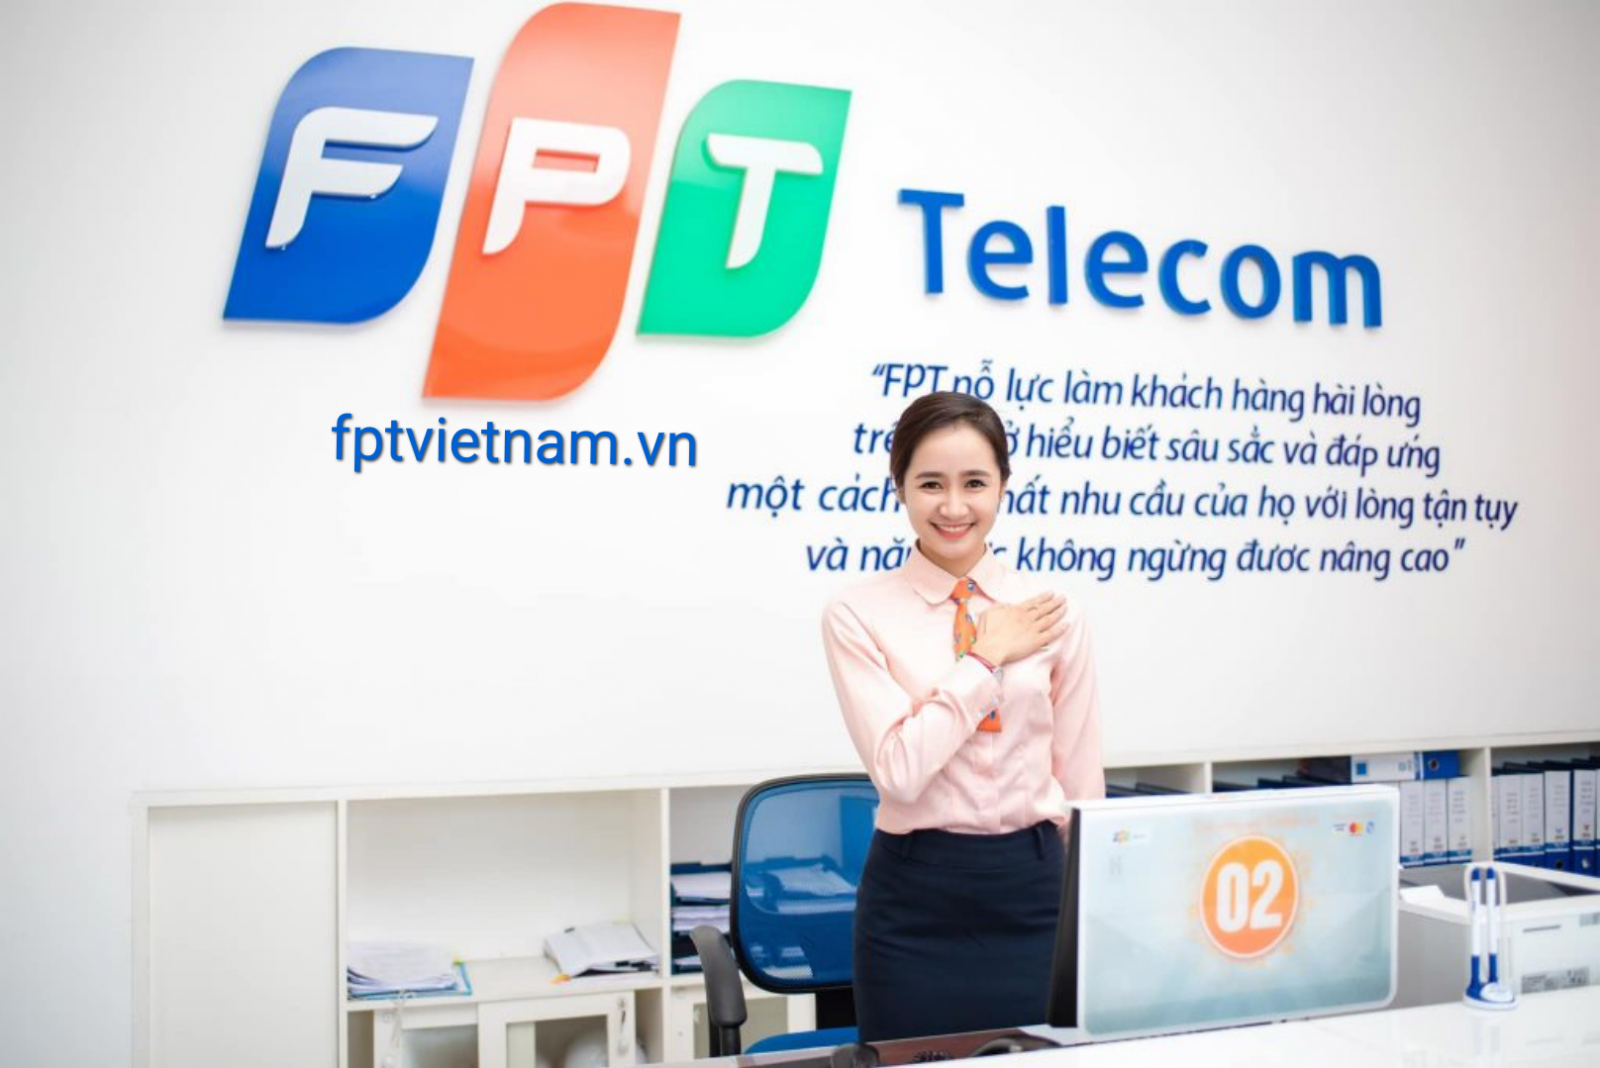 dịch vụ fpt telecom Thanh Hóa